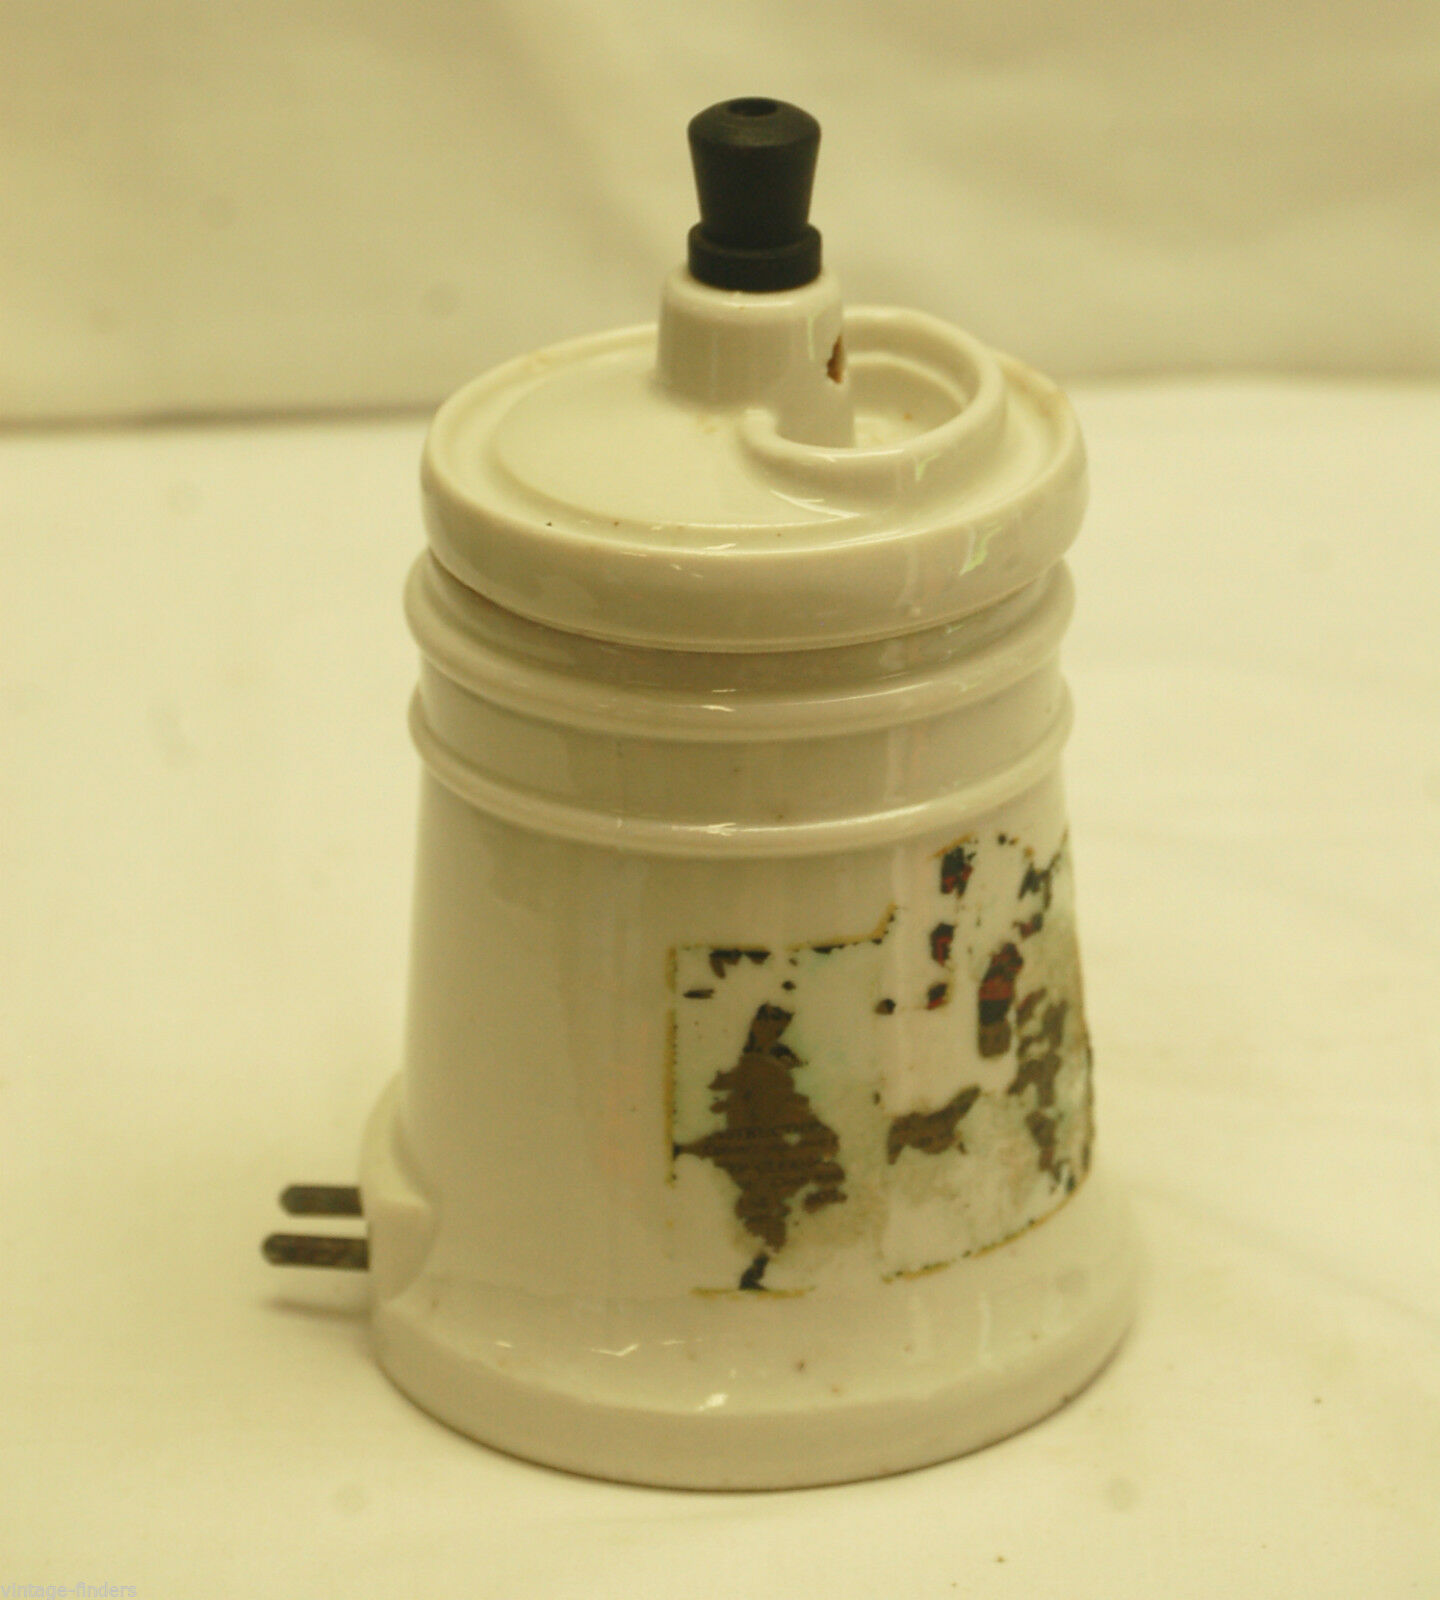 Old Vintage Hankscraft Ceramic Vaporizer Humidifier w Lid Novelty Medical Decor - $19.79